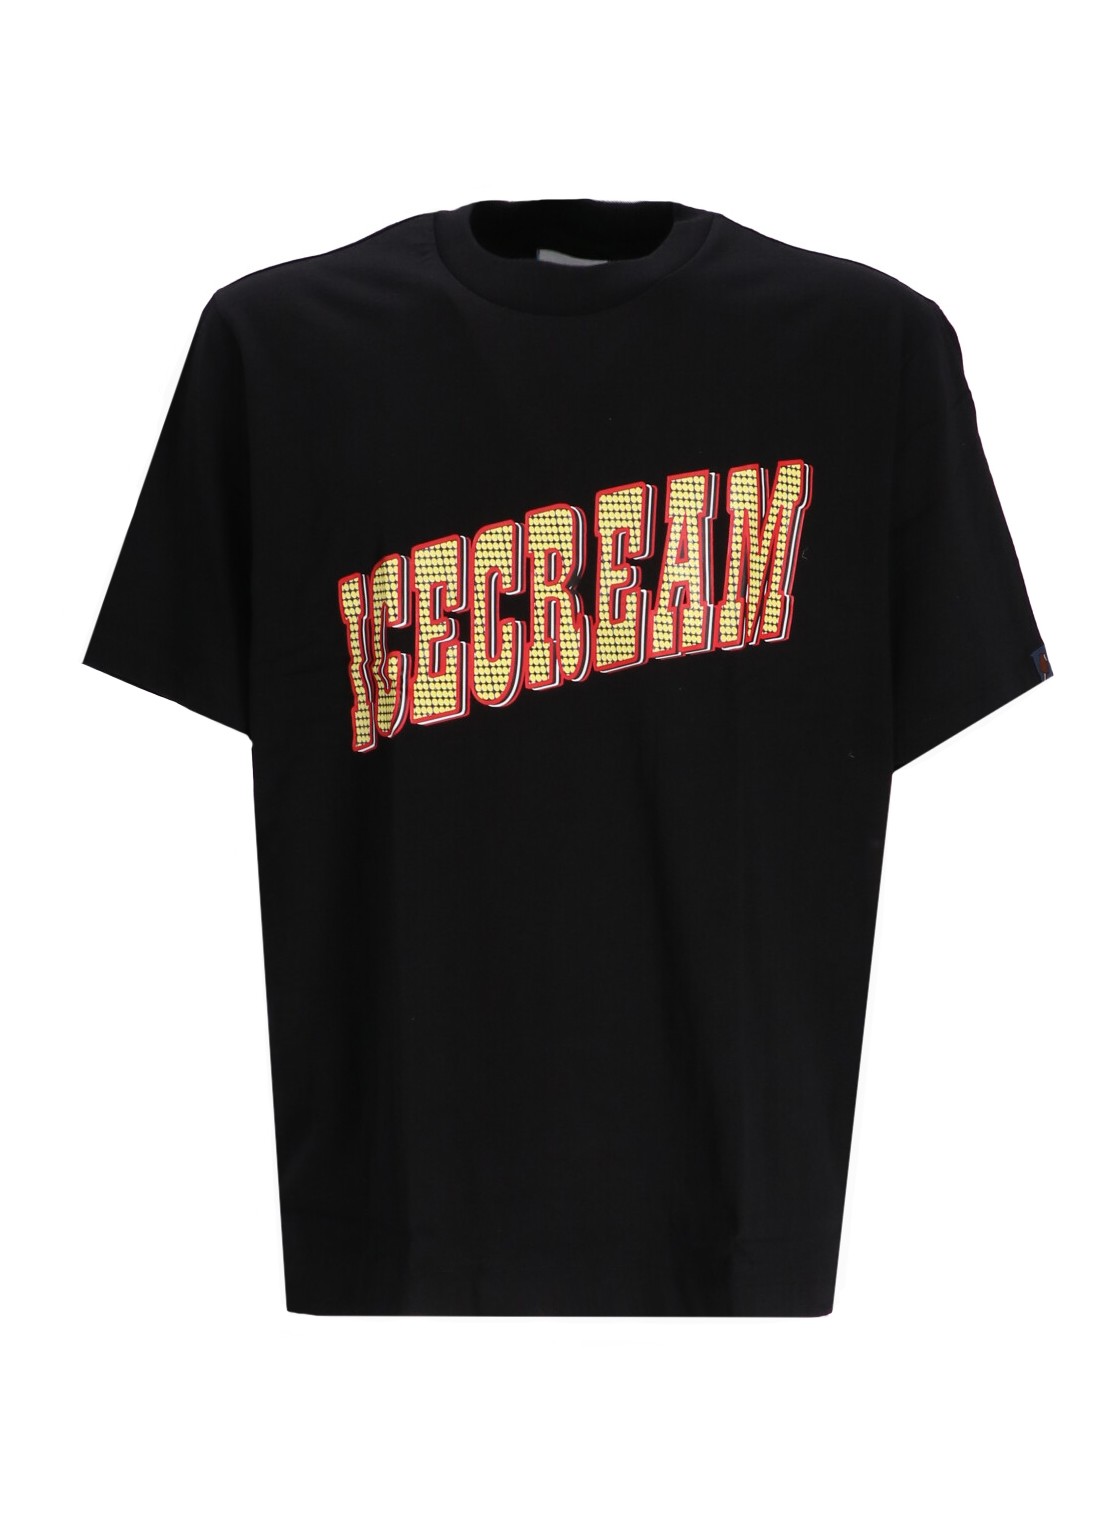 Camiseta icecream t-shirt mancasino t-shirt - ic24239 black talla XL
 